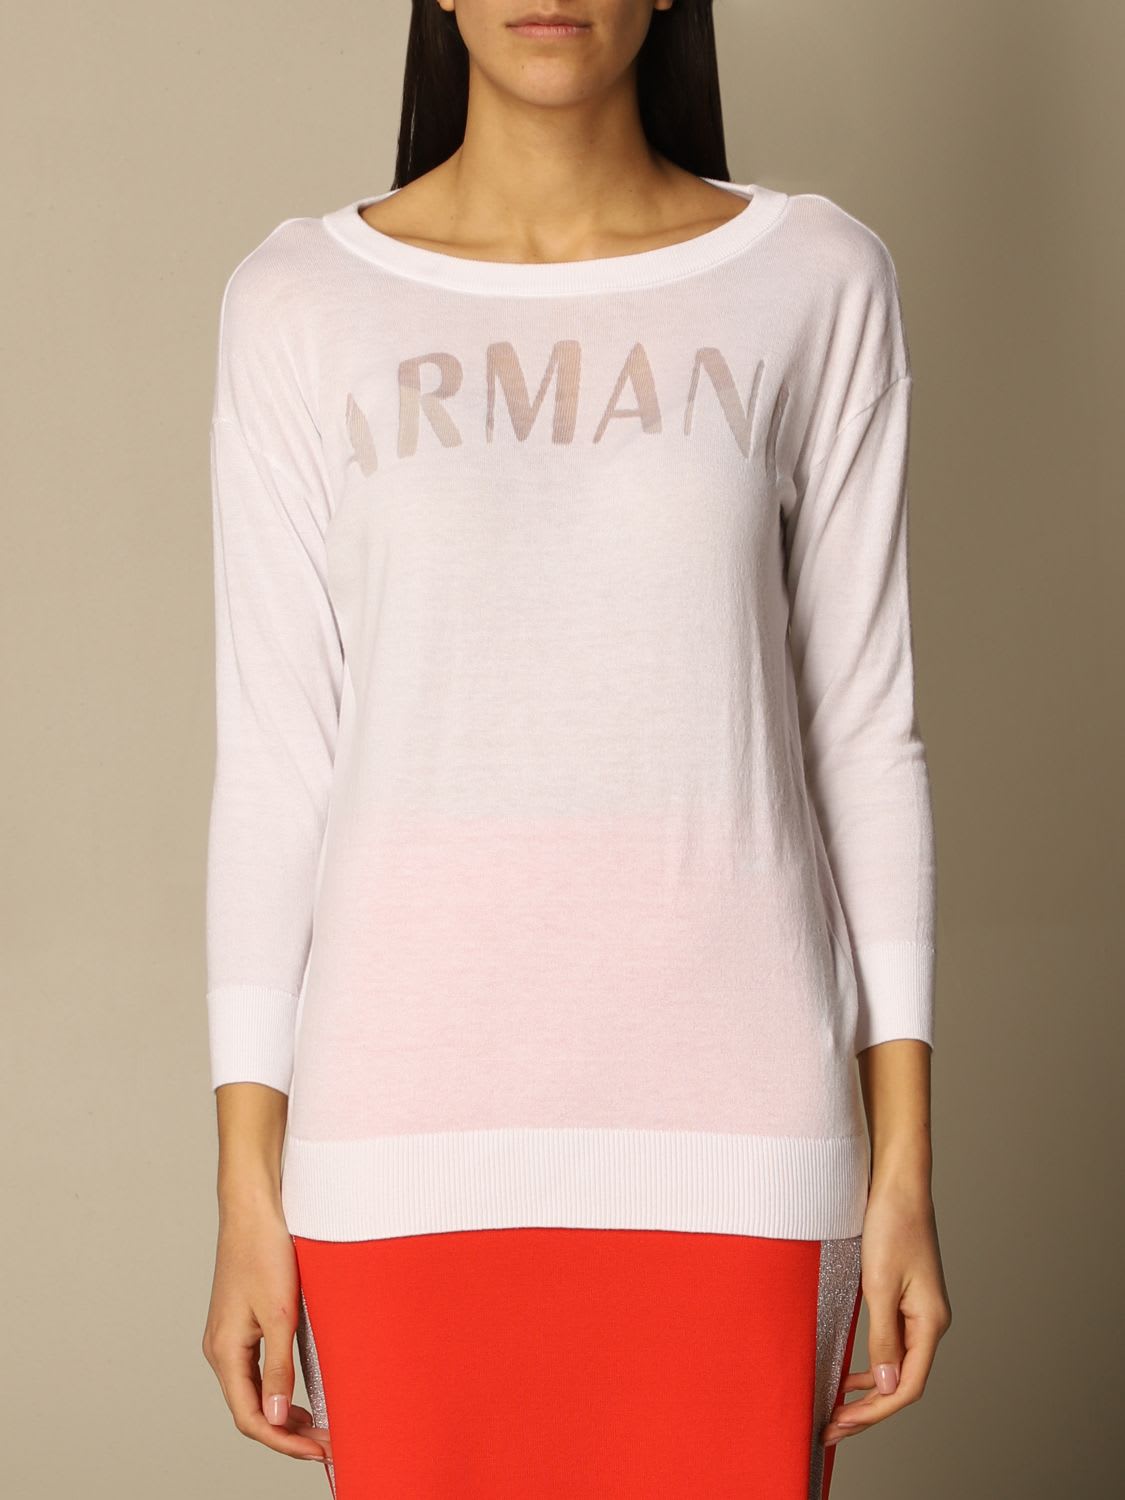 Armani Collezioni Armani Exchange Sweater Armani Exchange Crewneck Sweater In Cotton Blend In White